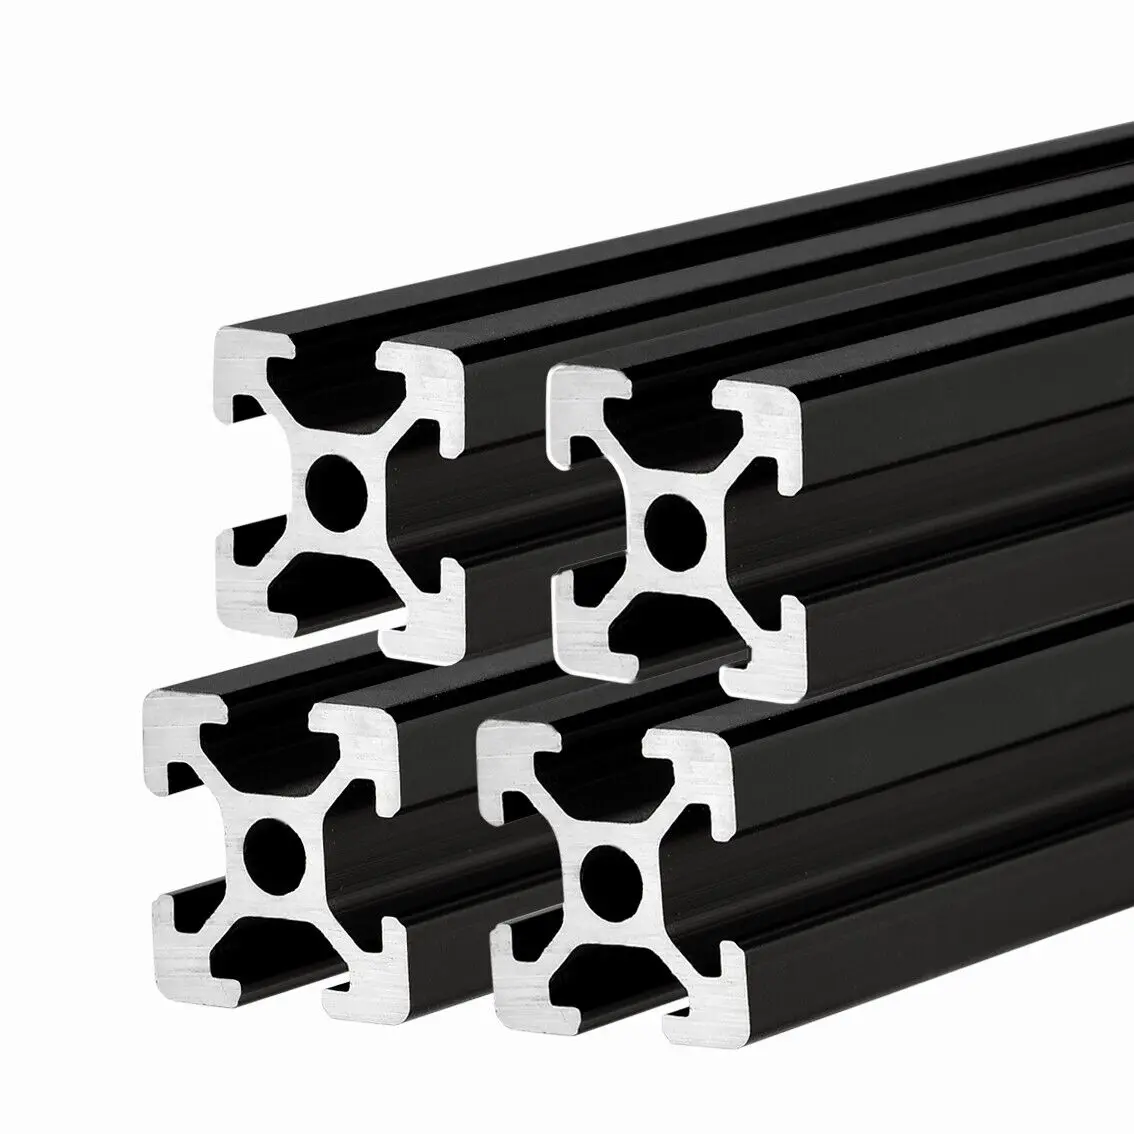 400mm Usongshine 4 Pcs T-2020 CNC 3D Printer Parts European Standard Anodized Linear Rail Aluminum Profile Extrusion for DIY 3D Printer 